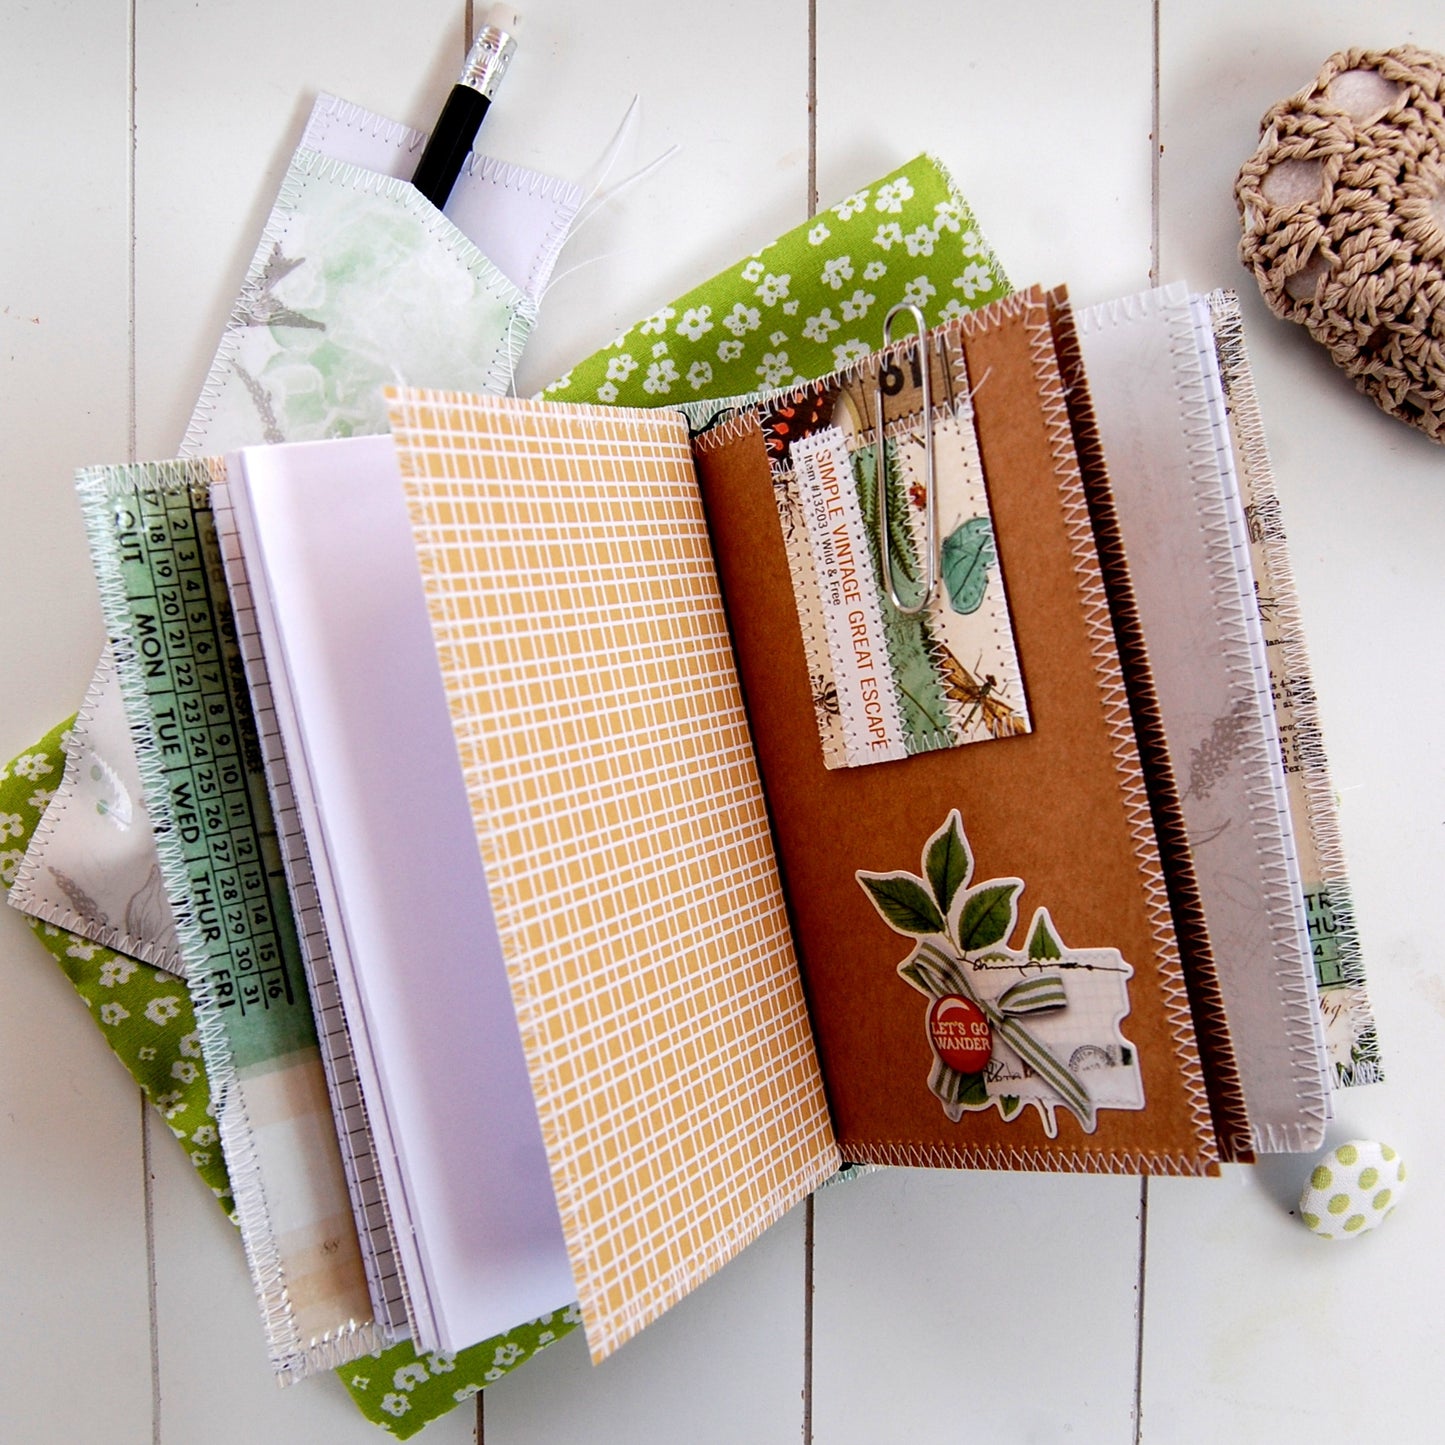 nootebook da viaggio fatto a mano in carta cucita formato da quattro quaderni sostituibili ispirato ai tradizionali Manùdori giapponesi